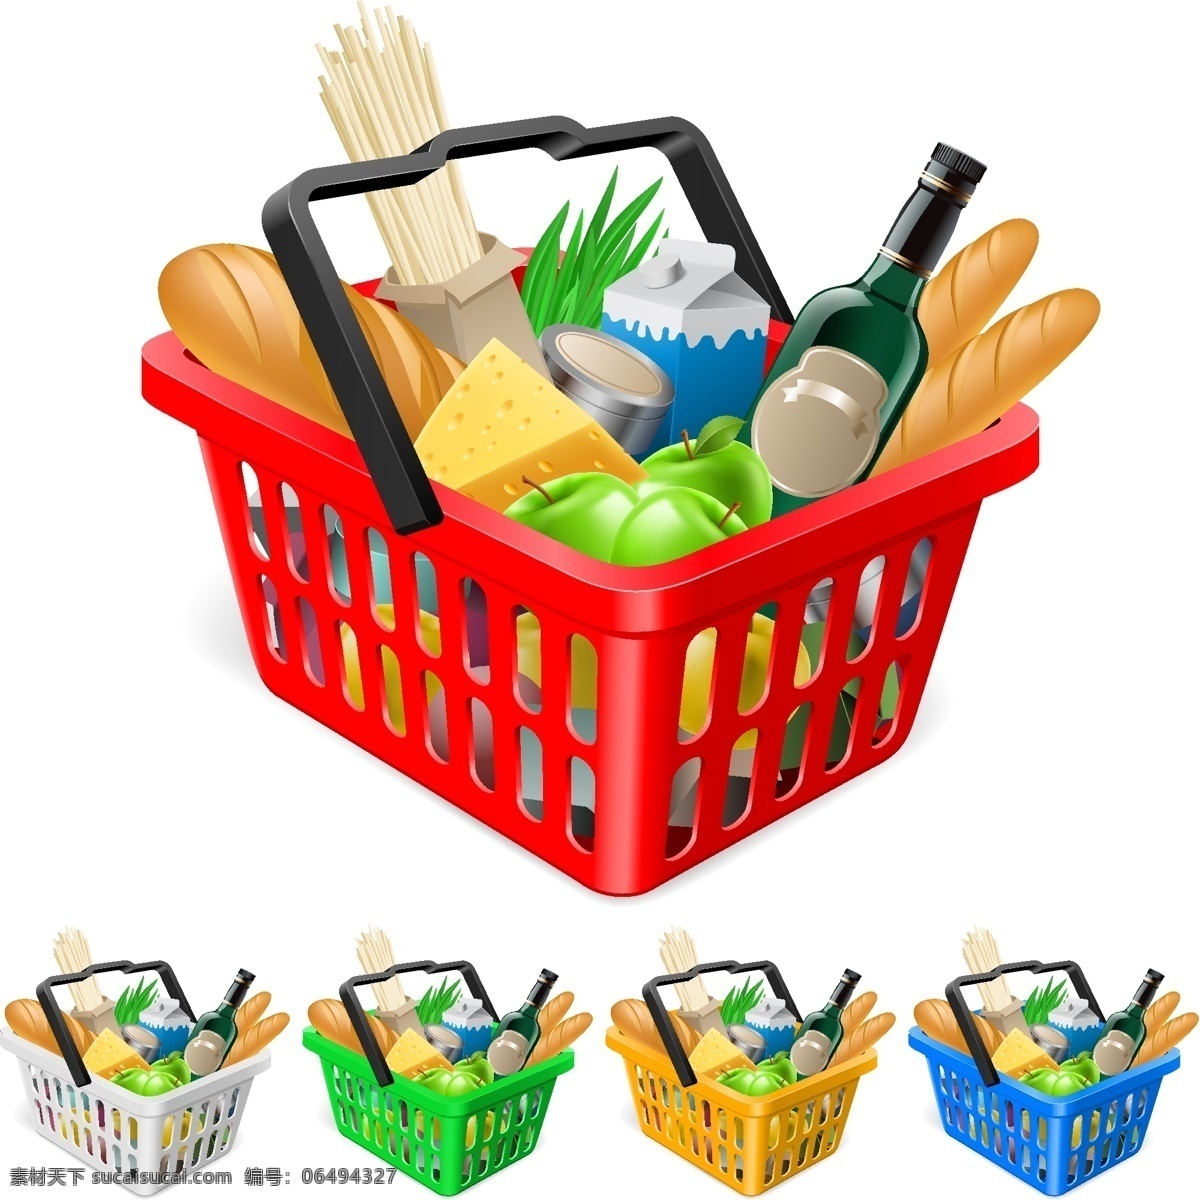 超市购物篮 超市购物 购物篮 蔬菜水果 购物袋 水果 蔬菜 超市 生活 休闲 生活百科 生活用品